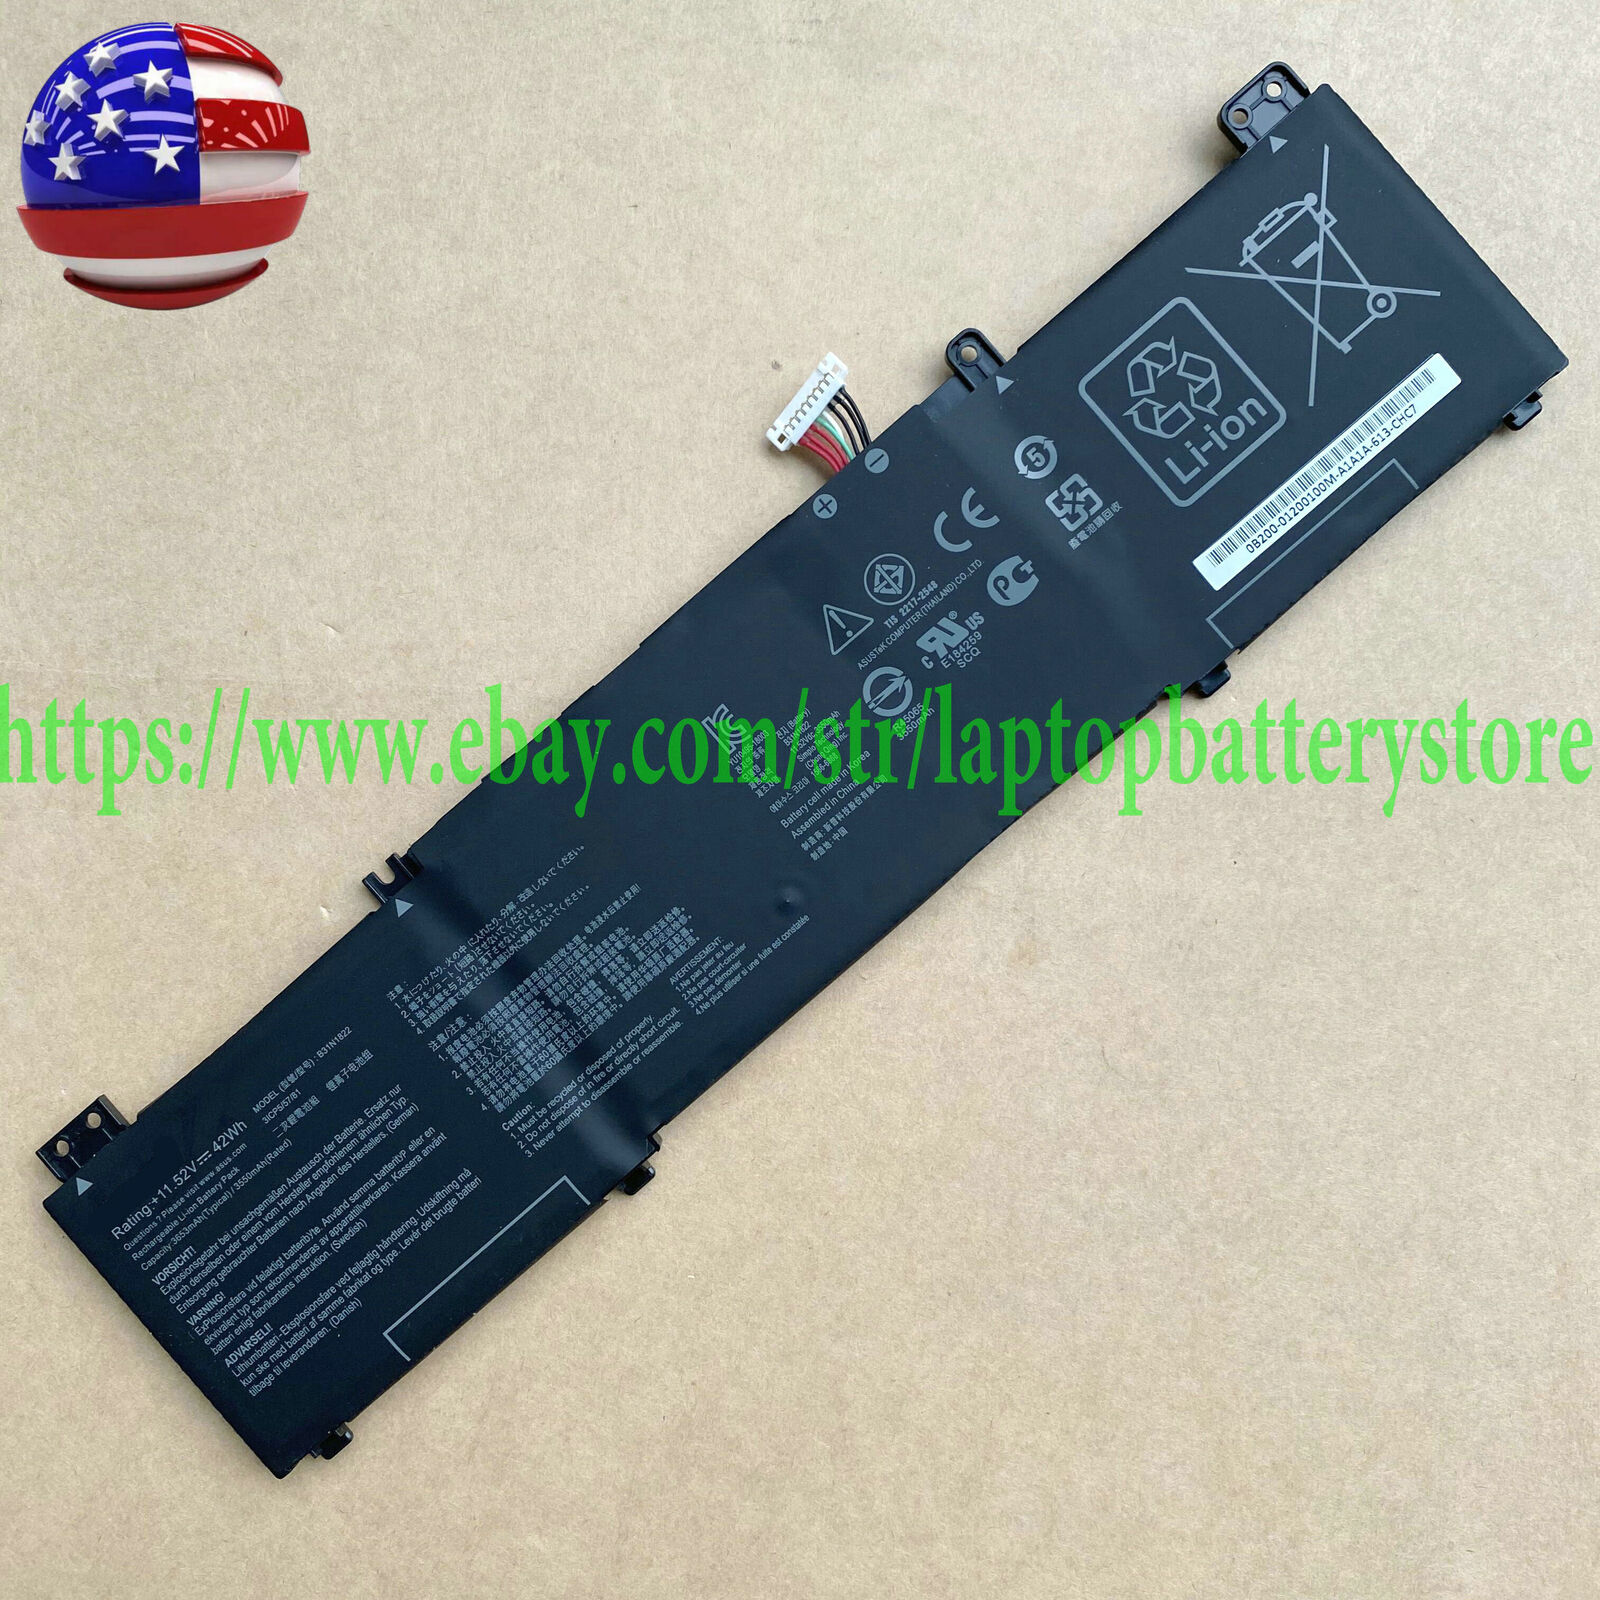 B31N1822 Battery For Asus Zenbook Flip 14 Q406DA UM462D UM462DA AI053T AM045T